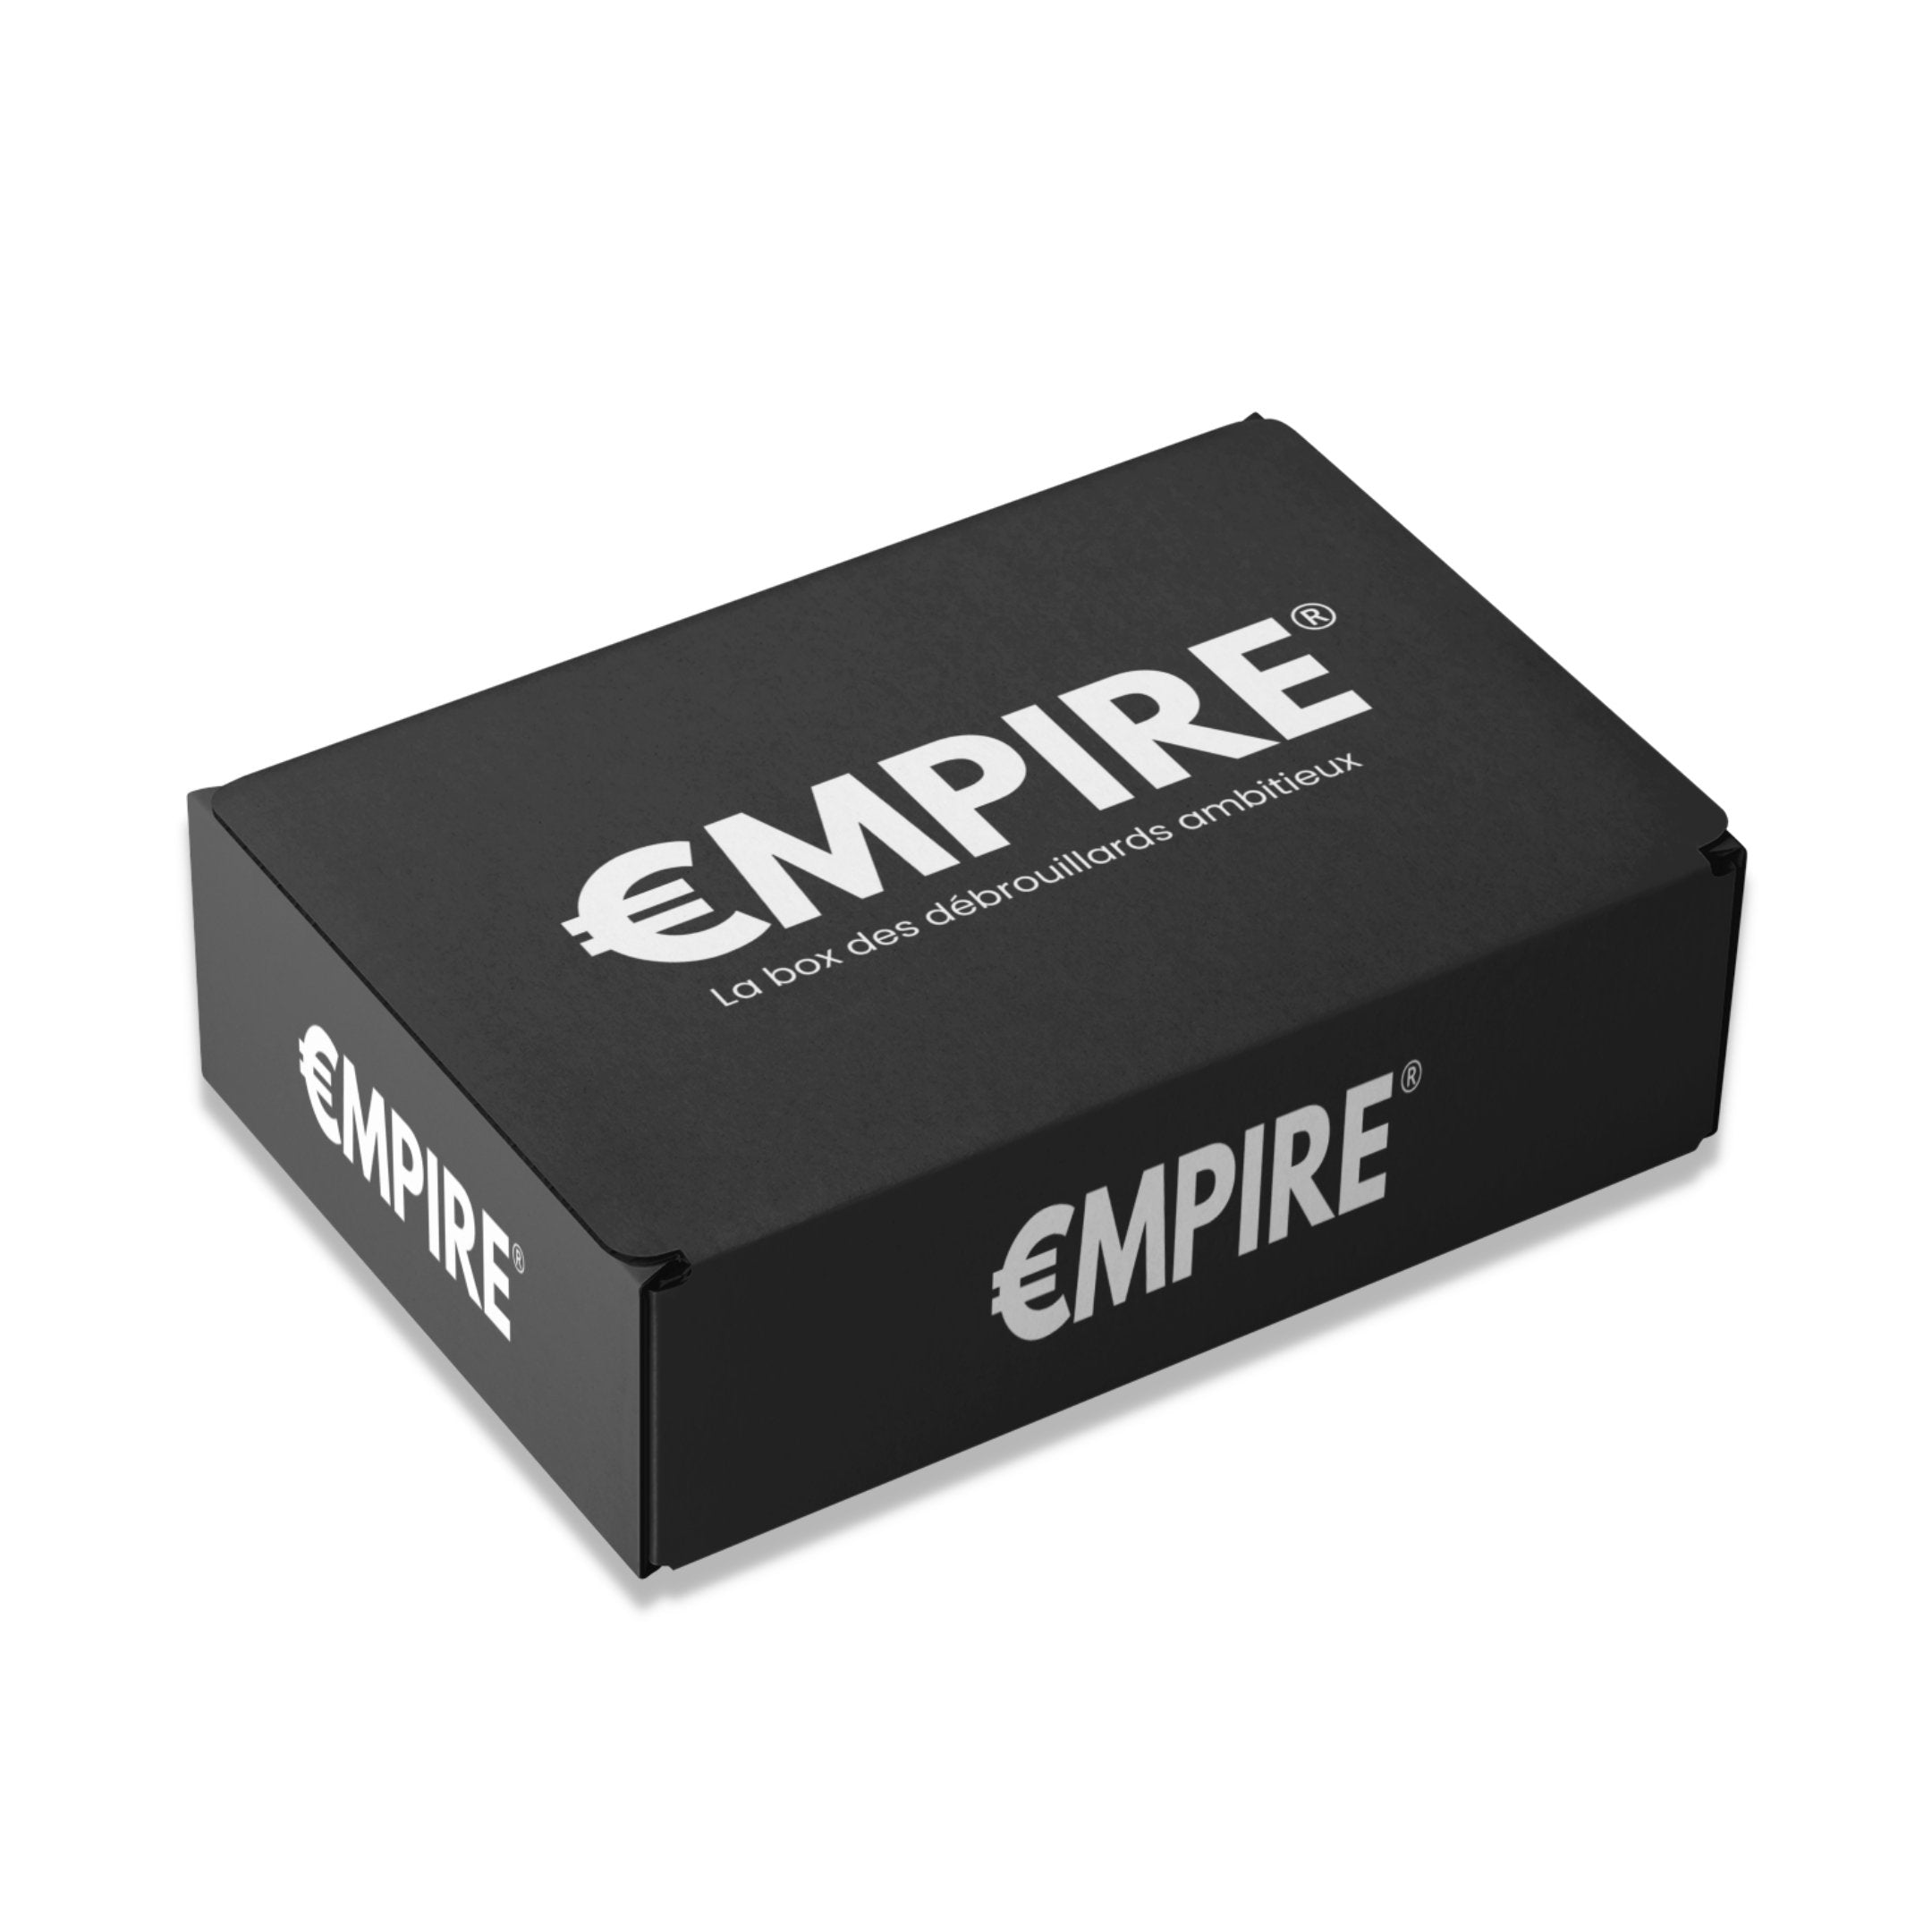 €MPIRE BOX - Premium